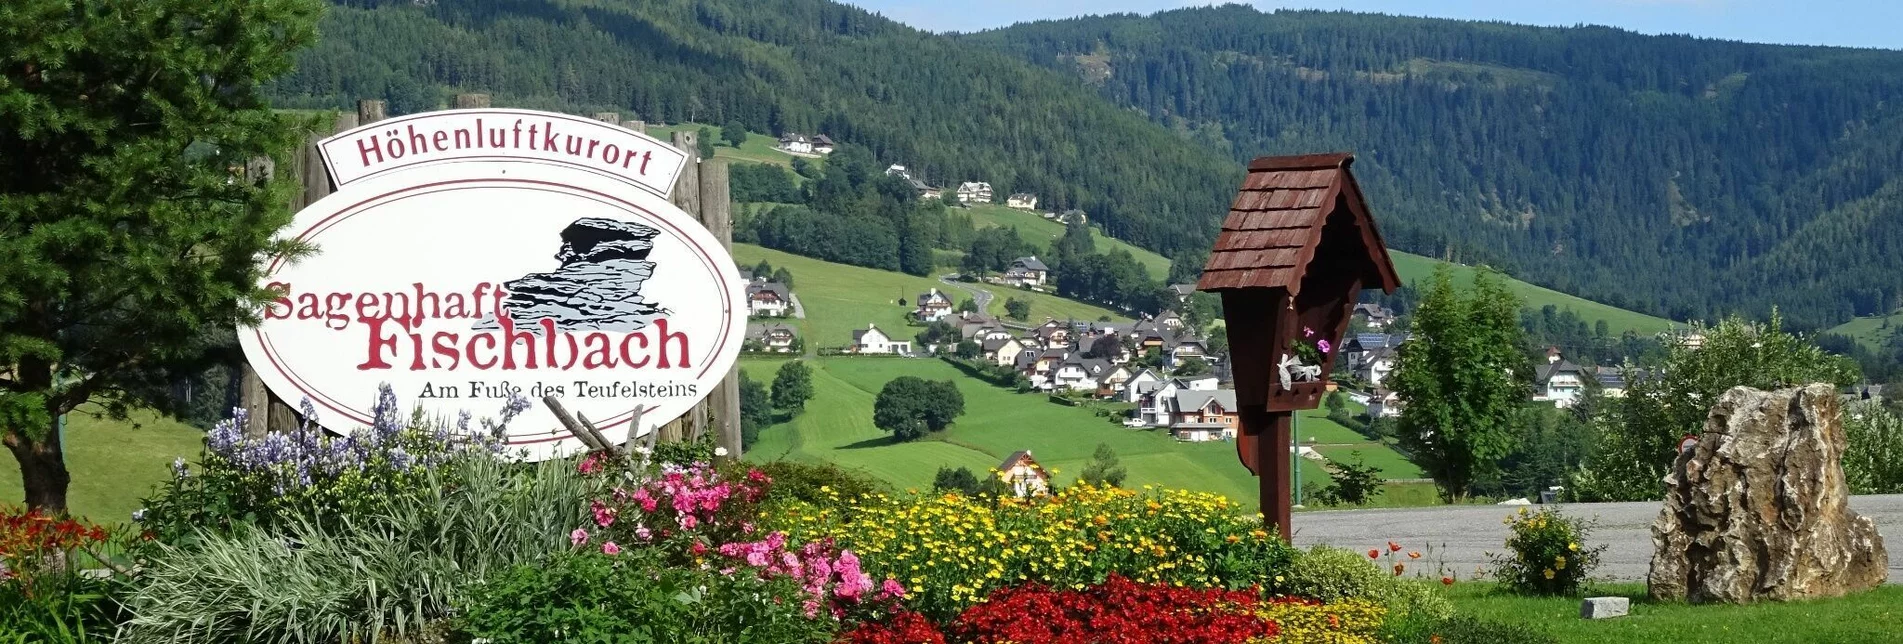 Ortseinfahrt Fischbach | © Ortsentwicklungsverein Sagenhaft Fischbach